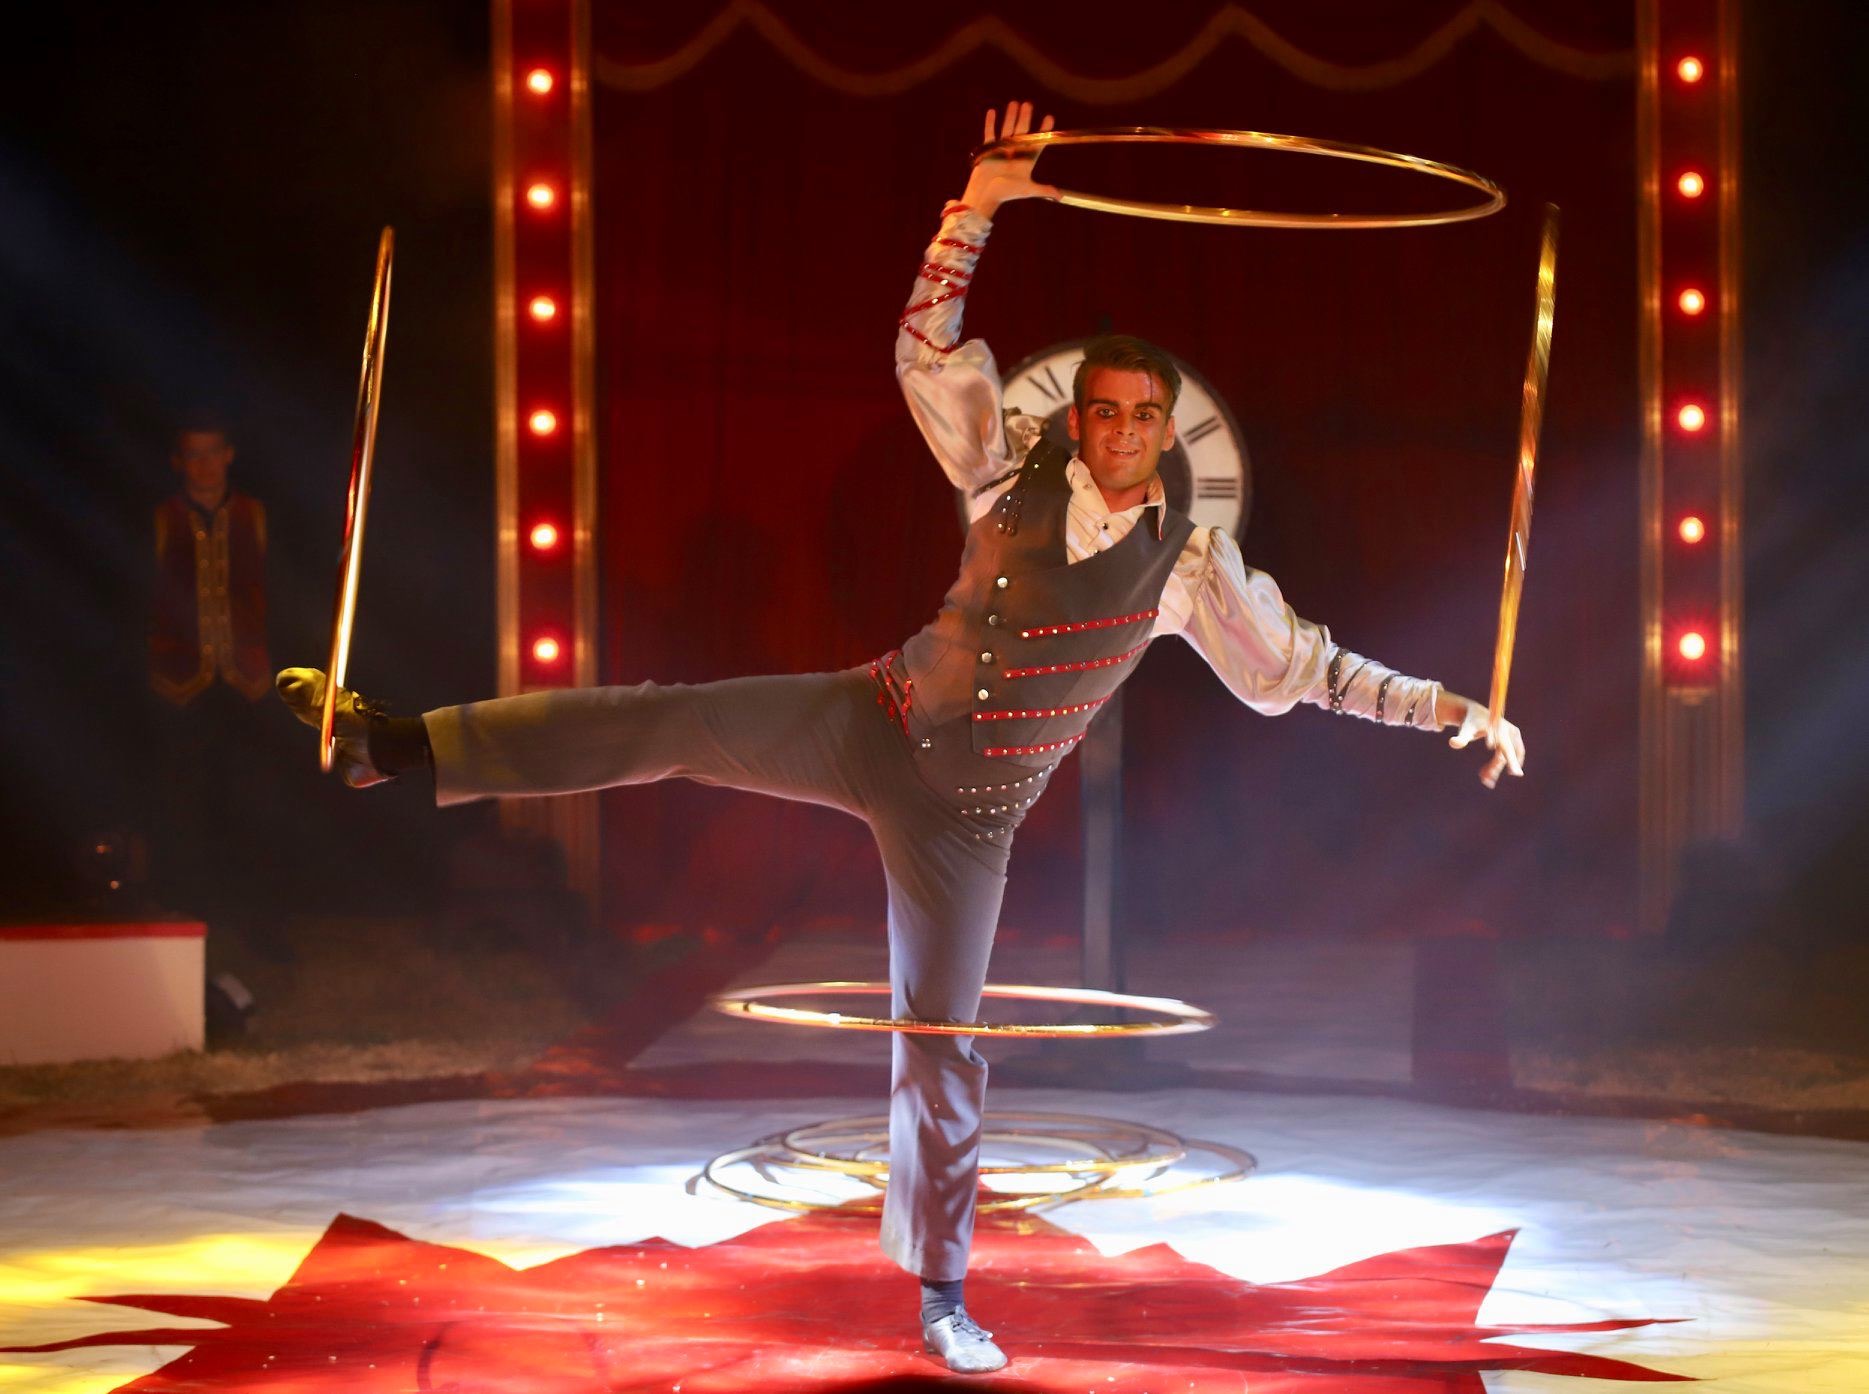 Le rêve de devenir un artiste de cirque